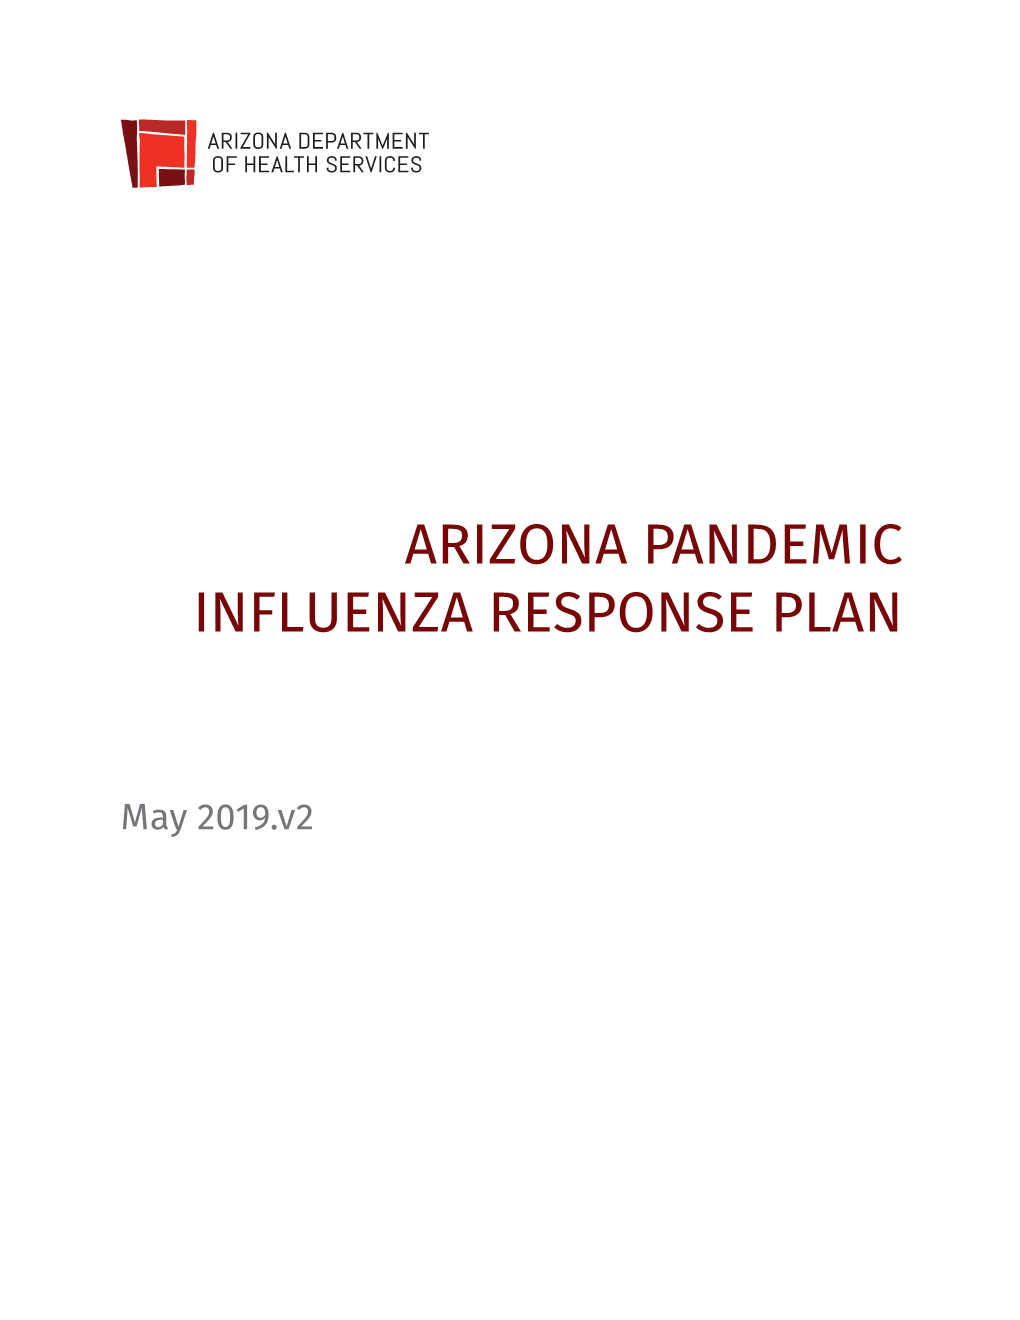 Pandemic Influenza Response Plan